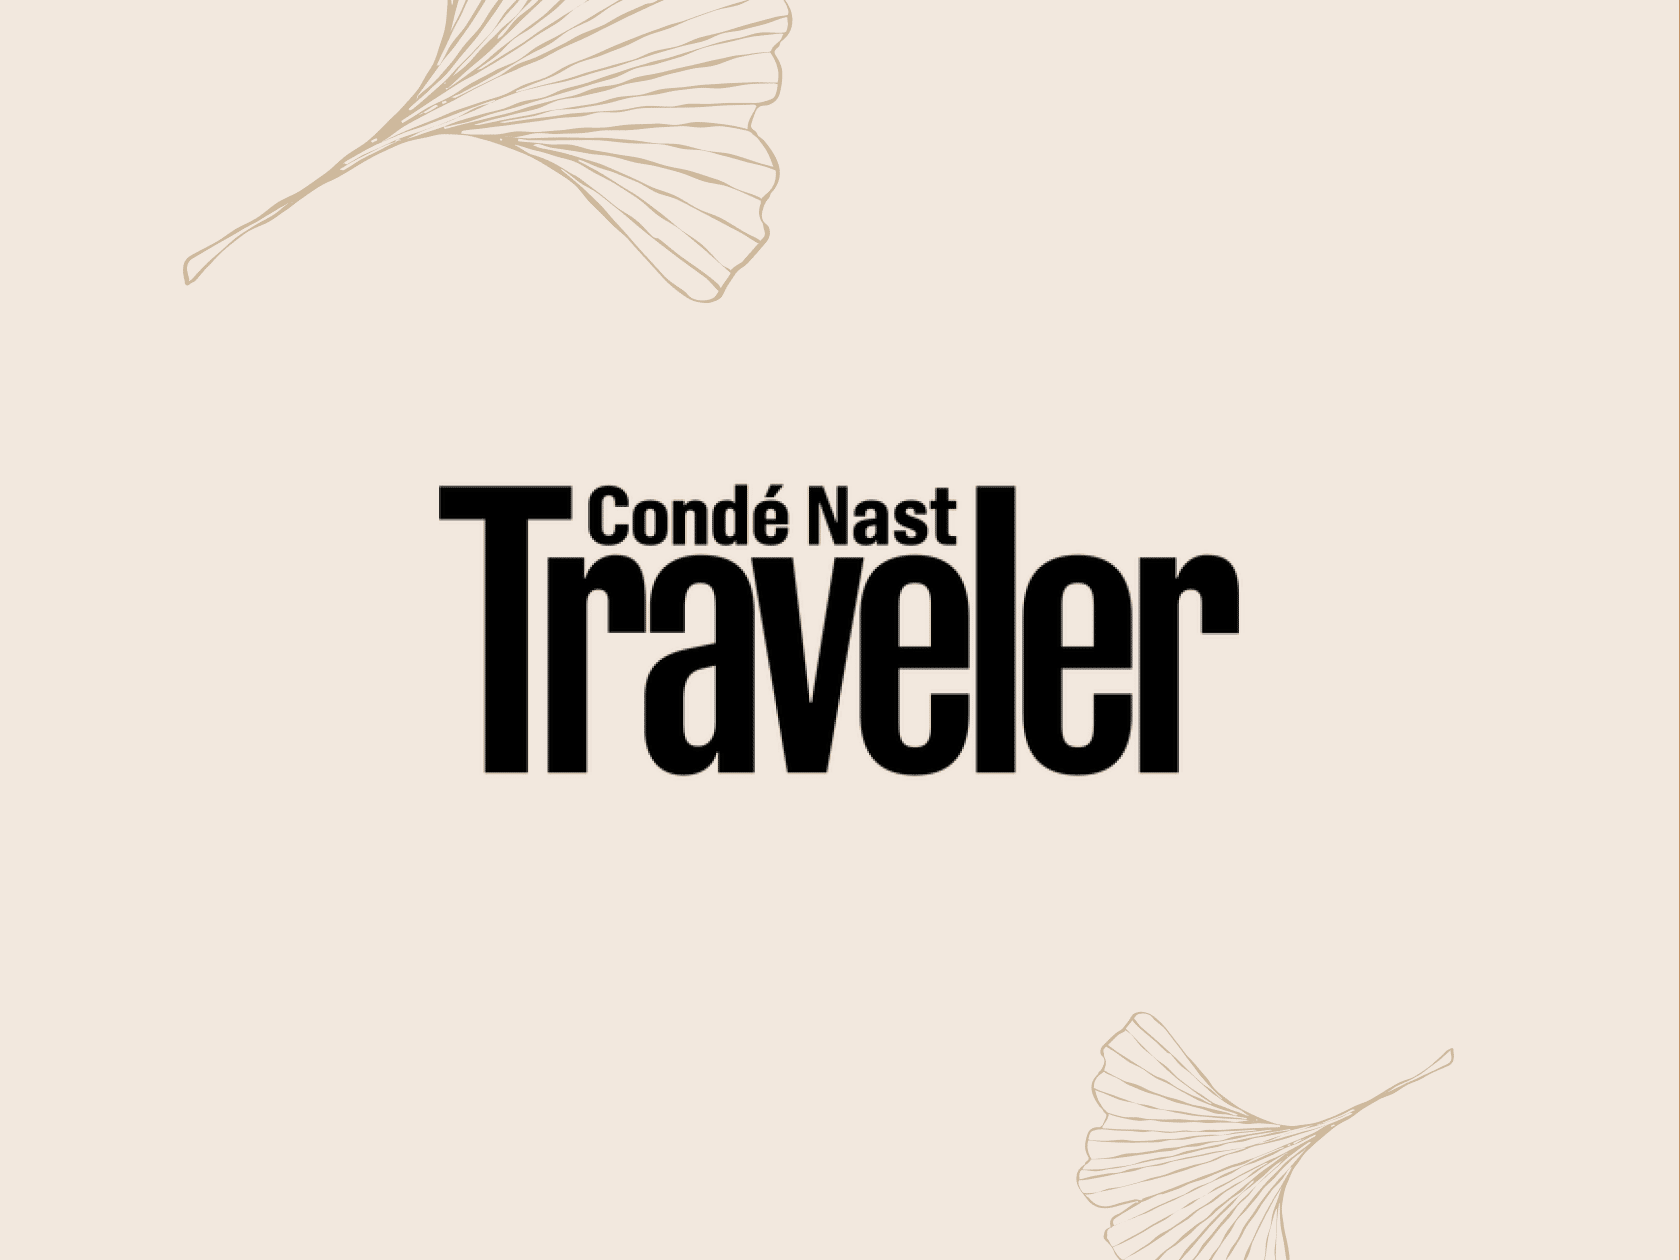 Condé Nast Traveler logo.